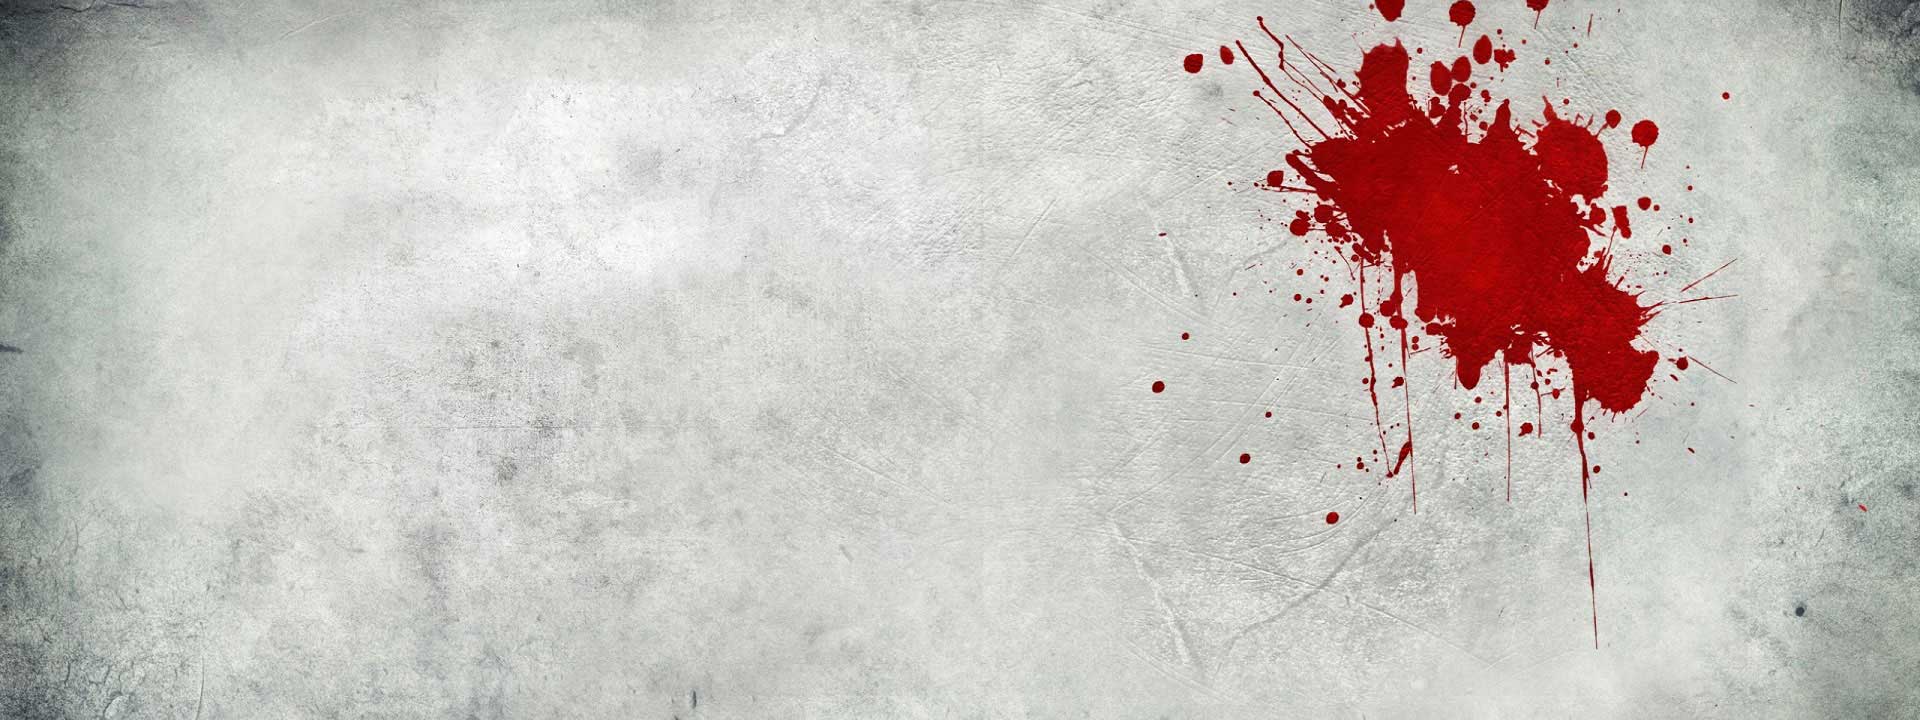 Imagem do podcast TESTE 9 do RPG Next - mancha se sangue em fundo quase branco